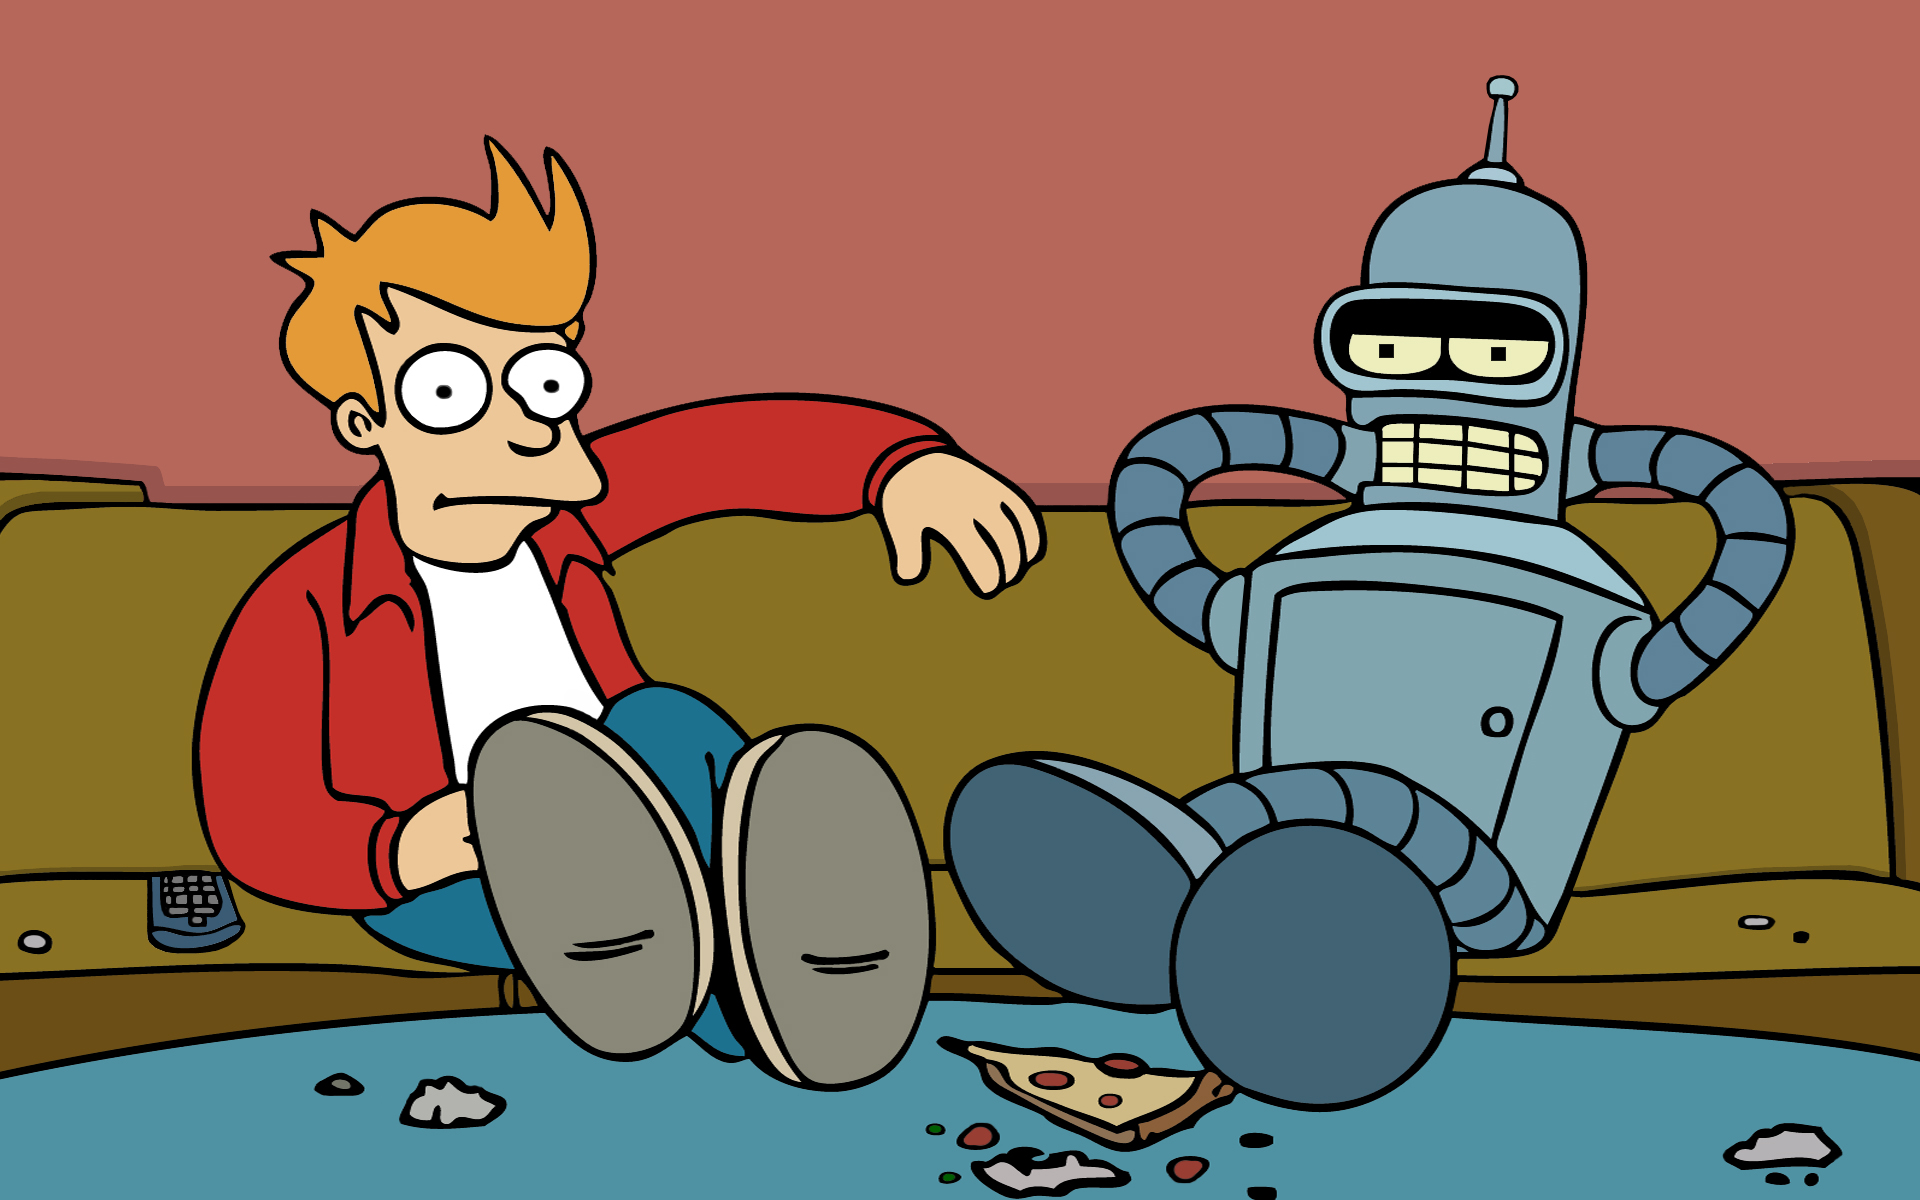 Futurama, Bender, artwork, Philip J. Fry - desktop wallpaper